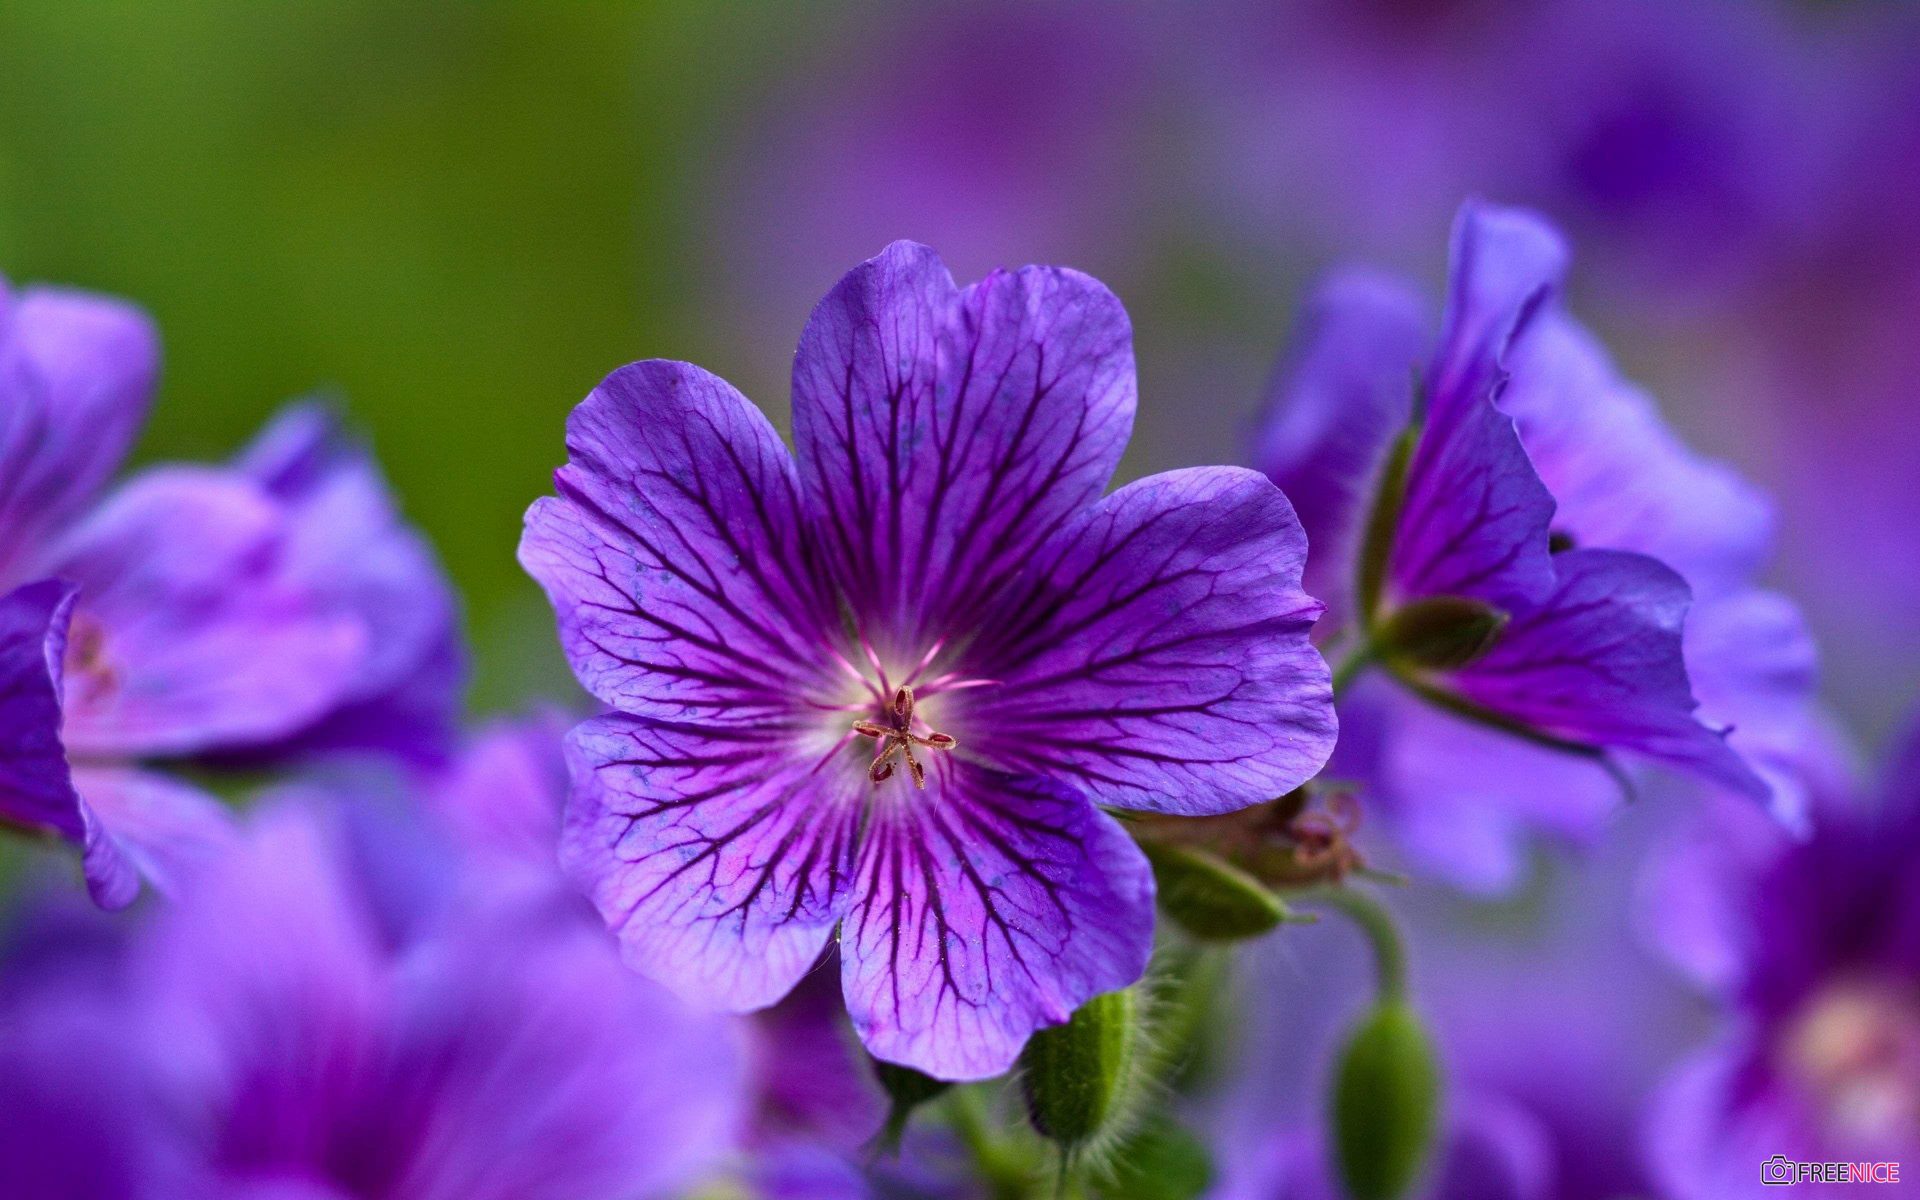 Violet mang ý nghĩa về tình yêu, nên nó thường được đưa vào các bó hoa cưới, và được dùng để tôn vinh tình yêu đích thực. Hãy xem hình ảnh hoa Violet để hiểu rõ hơn về ý nghĩa tuyệt vời của nó!